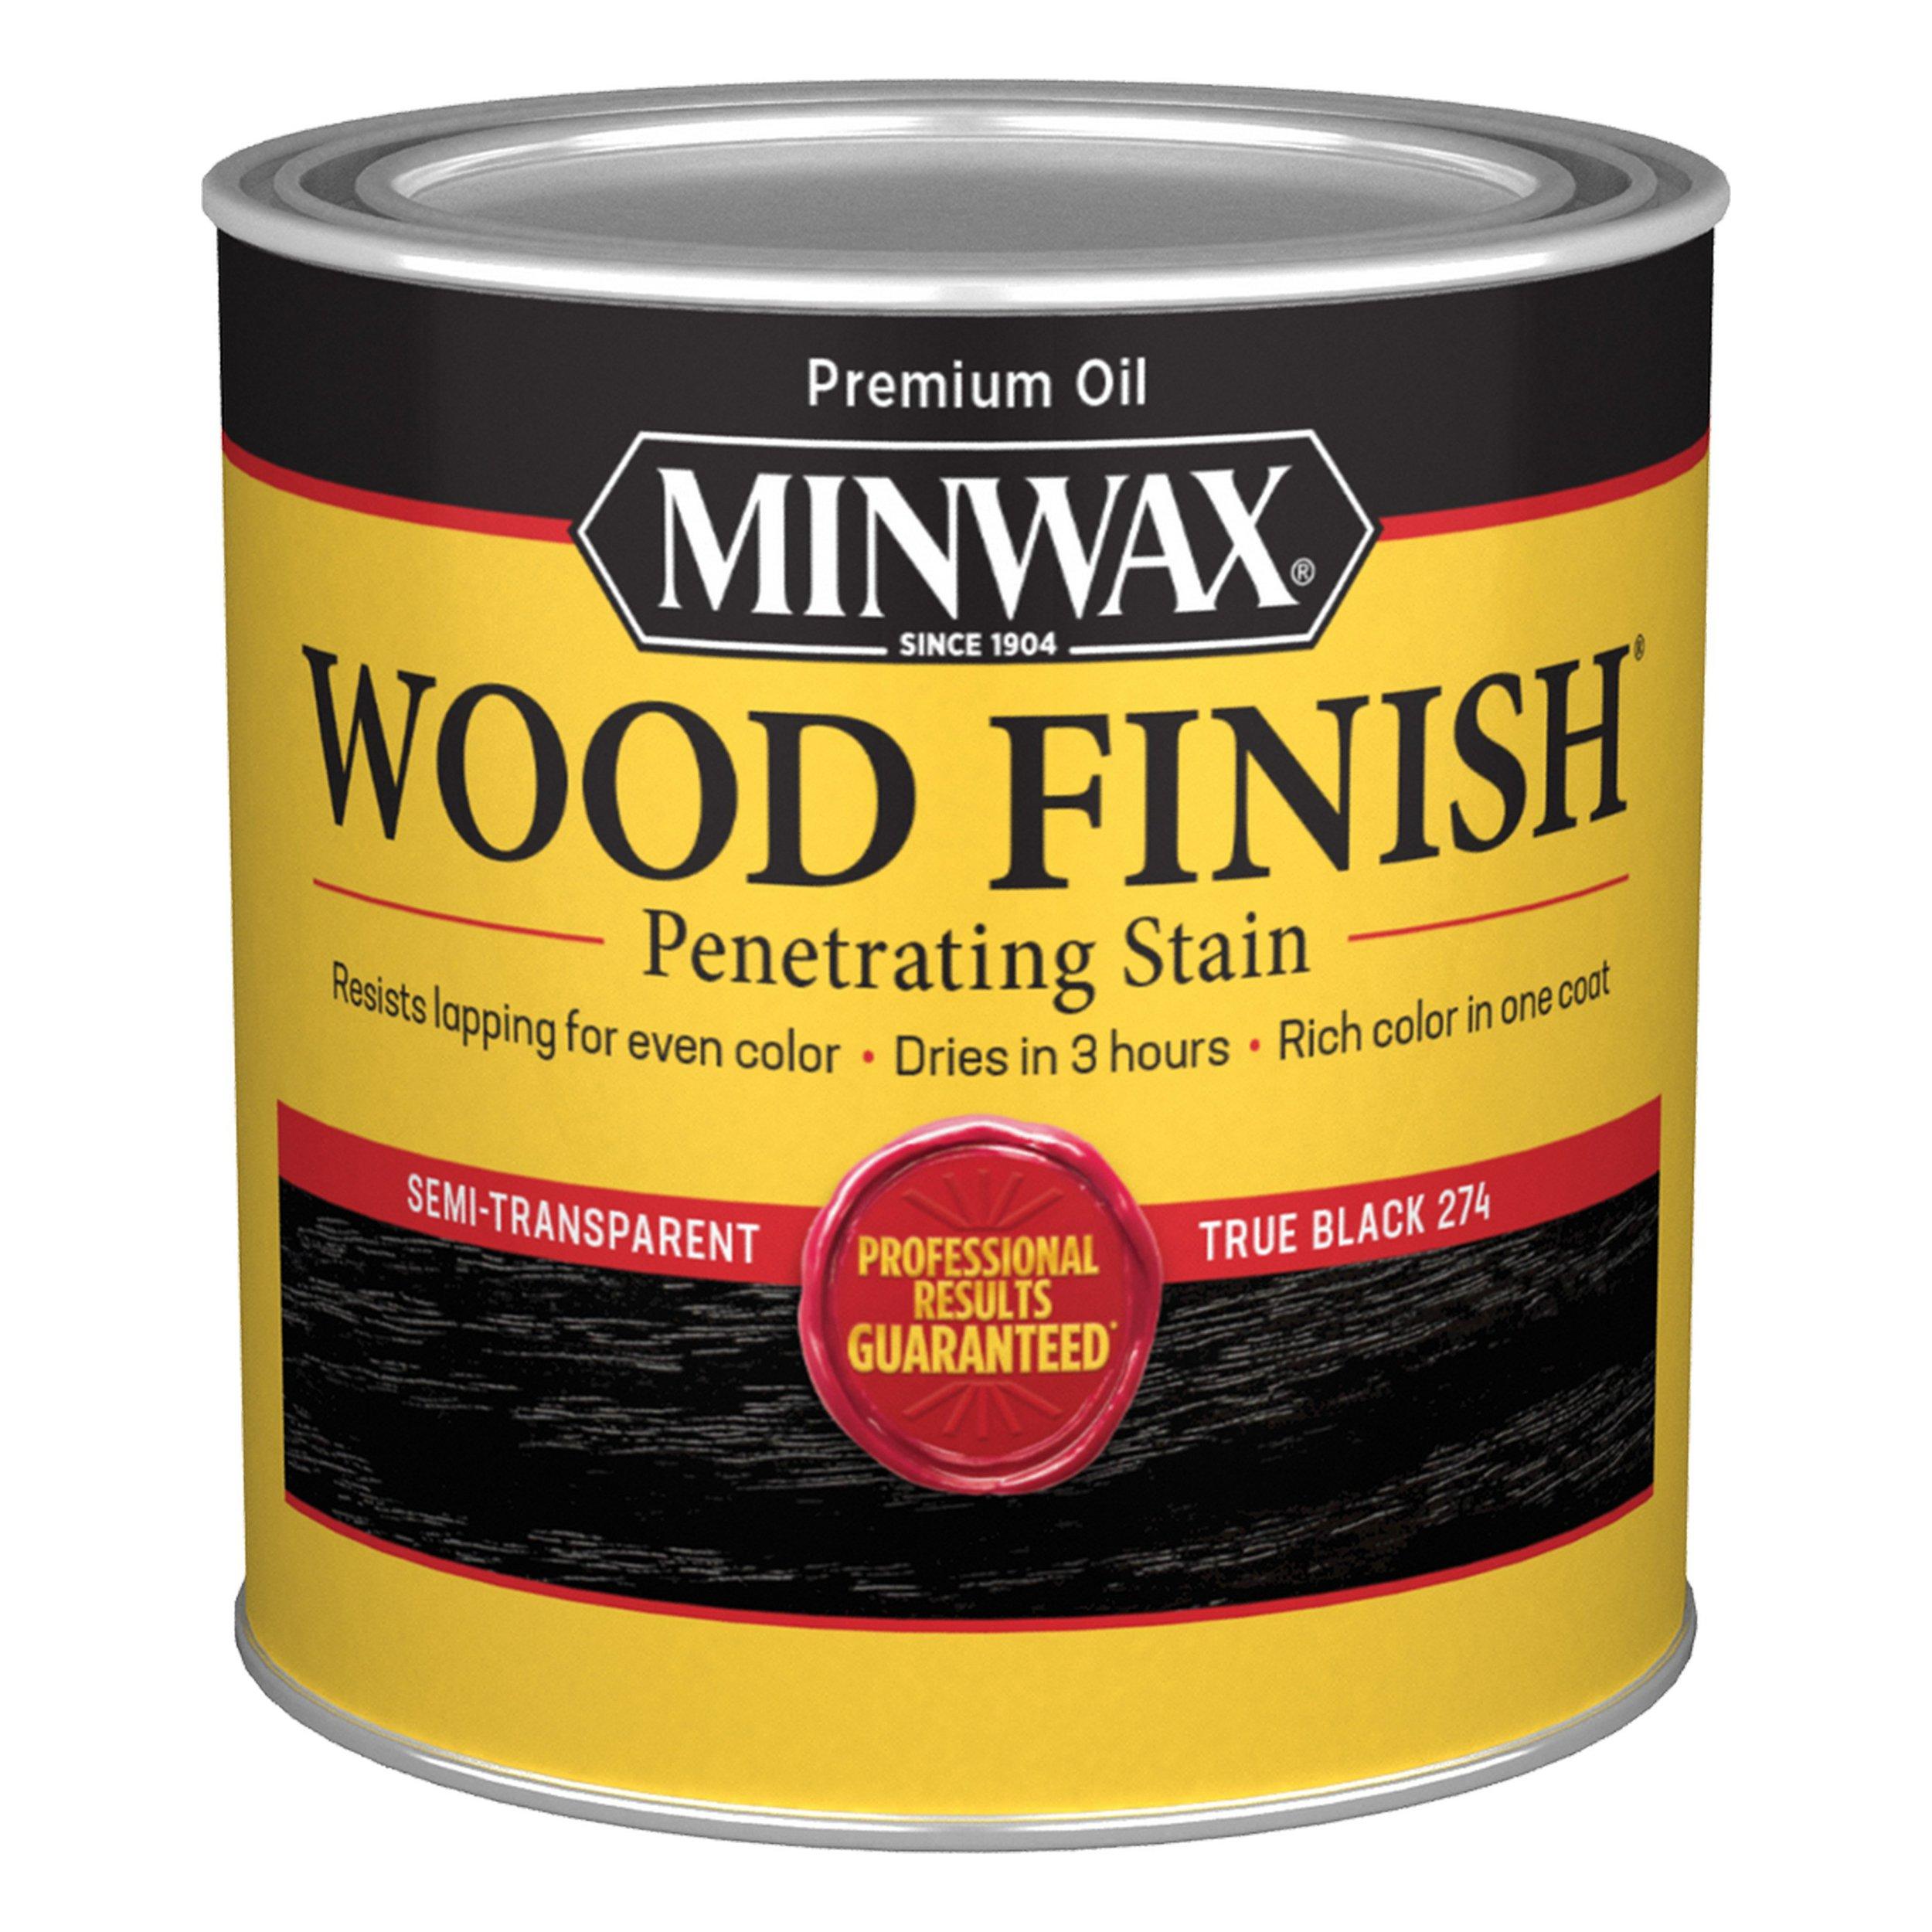 Minwax True Black 274 Wood Finish Stain